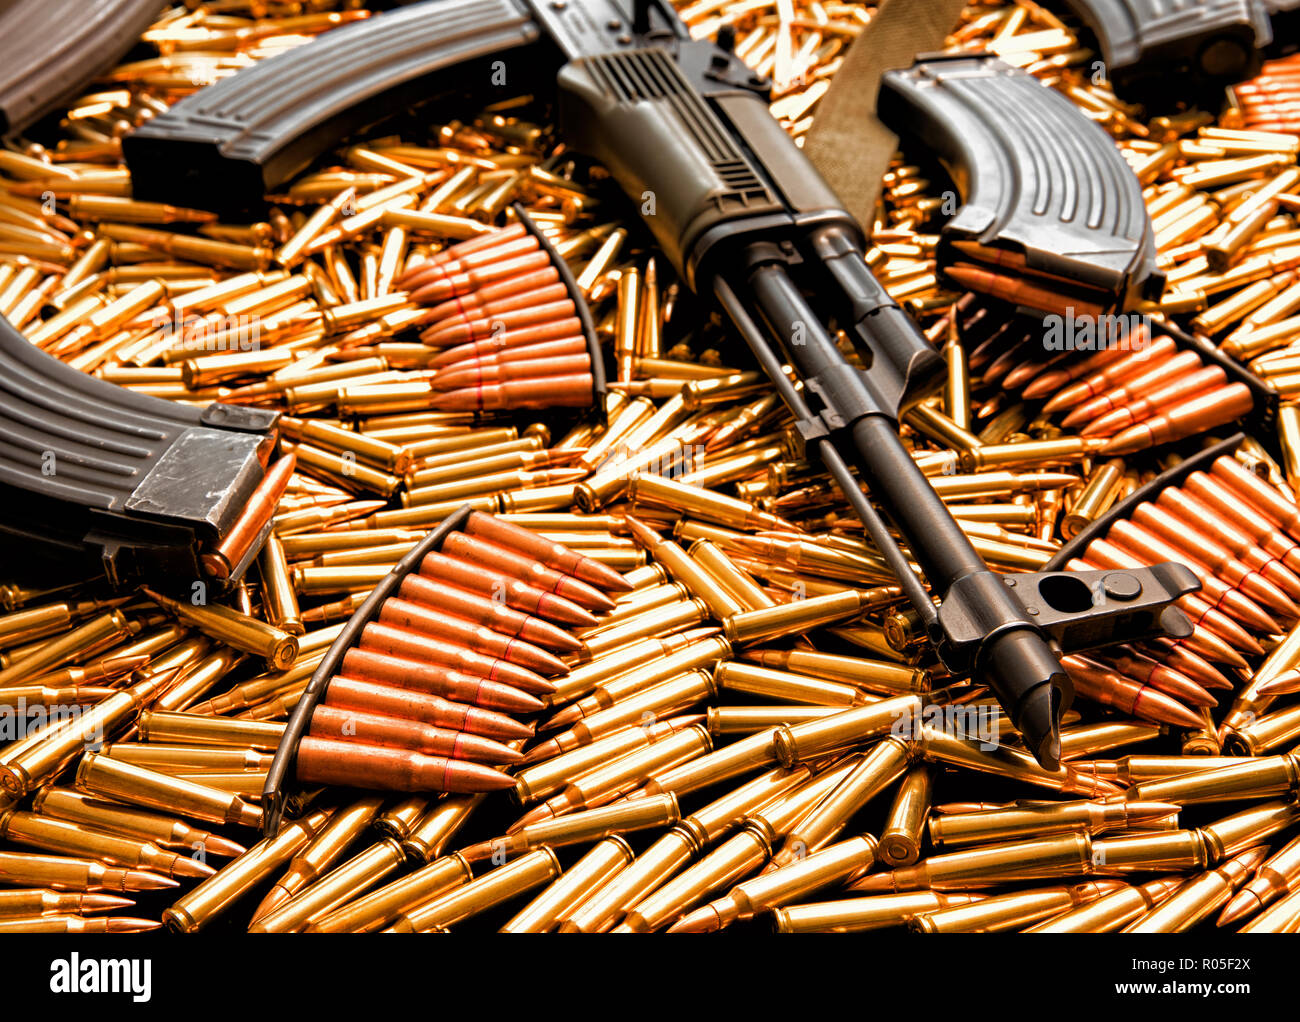 Fusil d'assaut AK-47 avec des munitions Banque D'Images